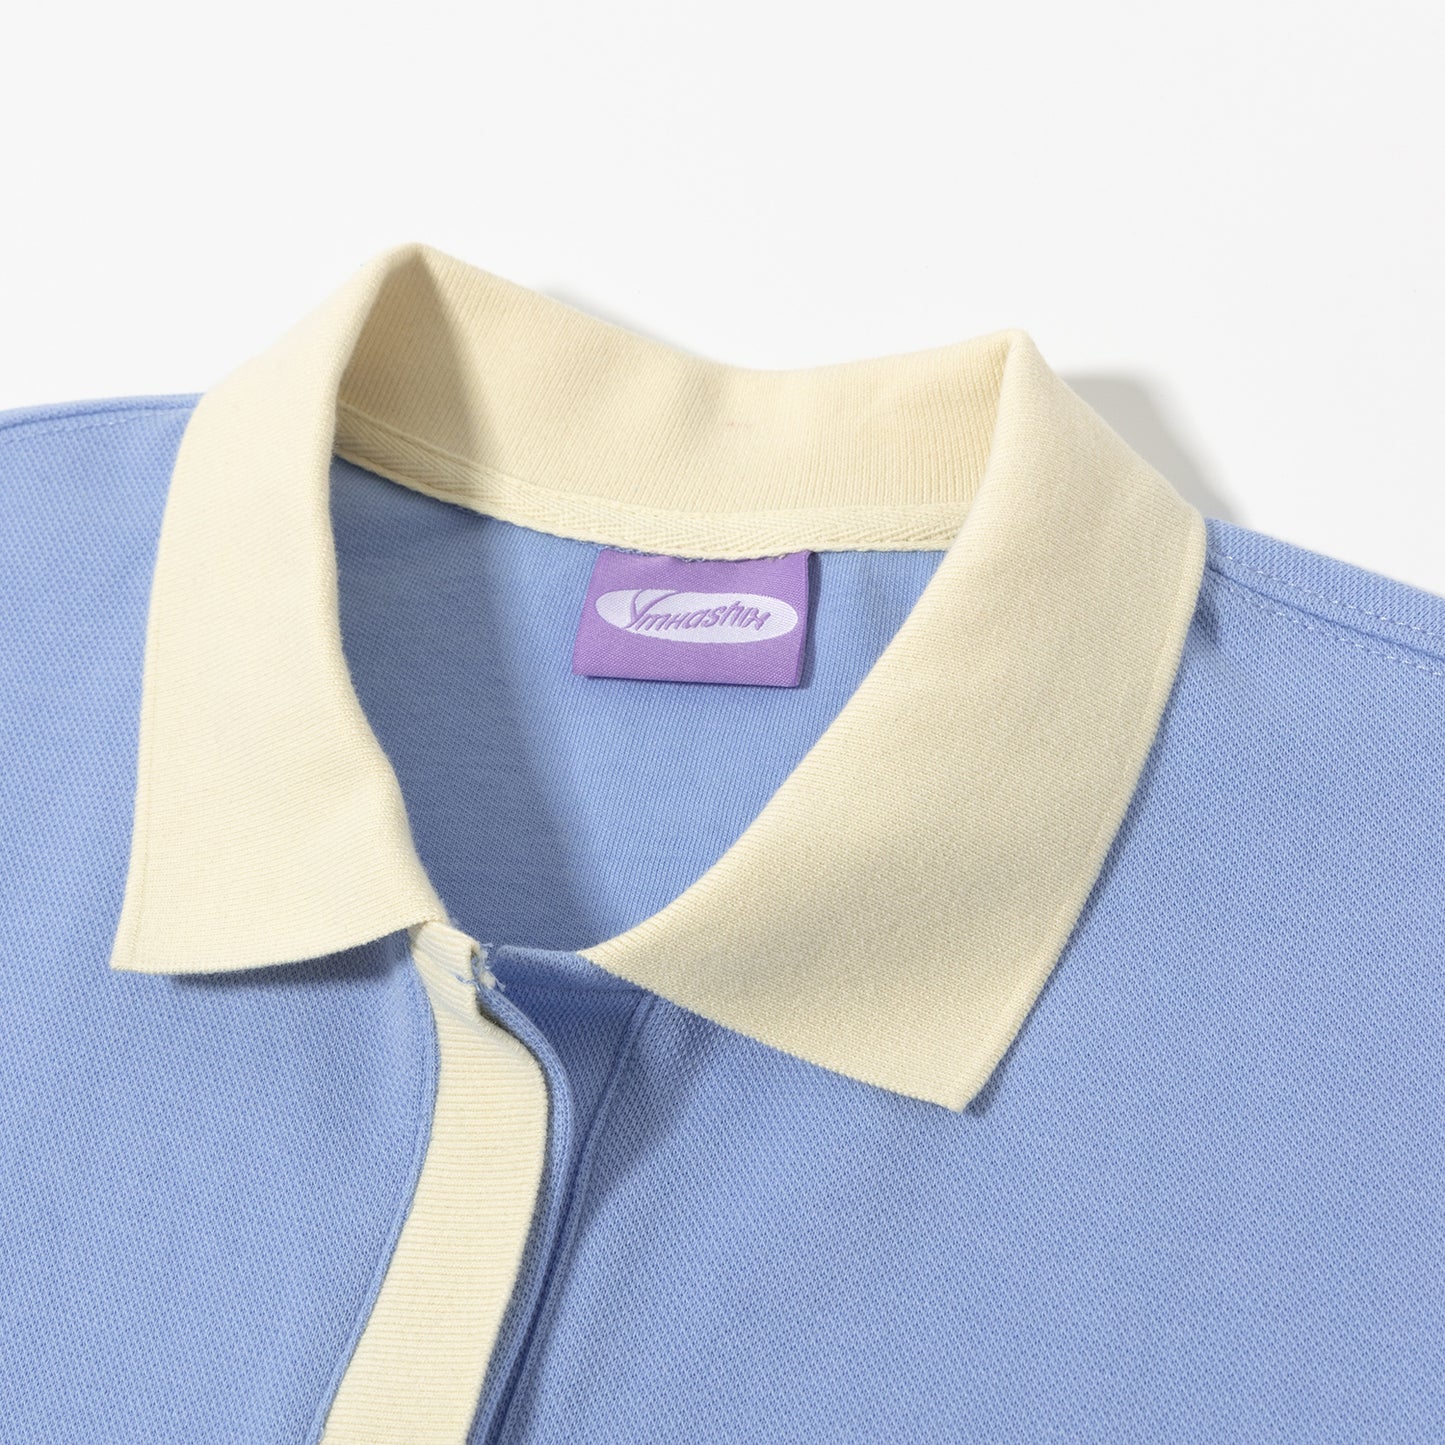 Polo shirt puff, blue